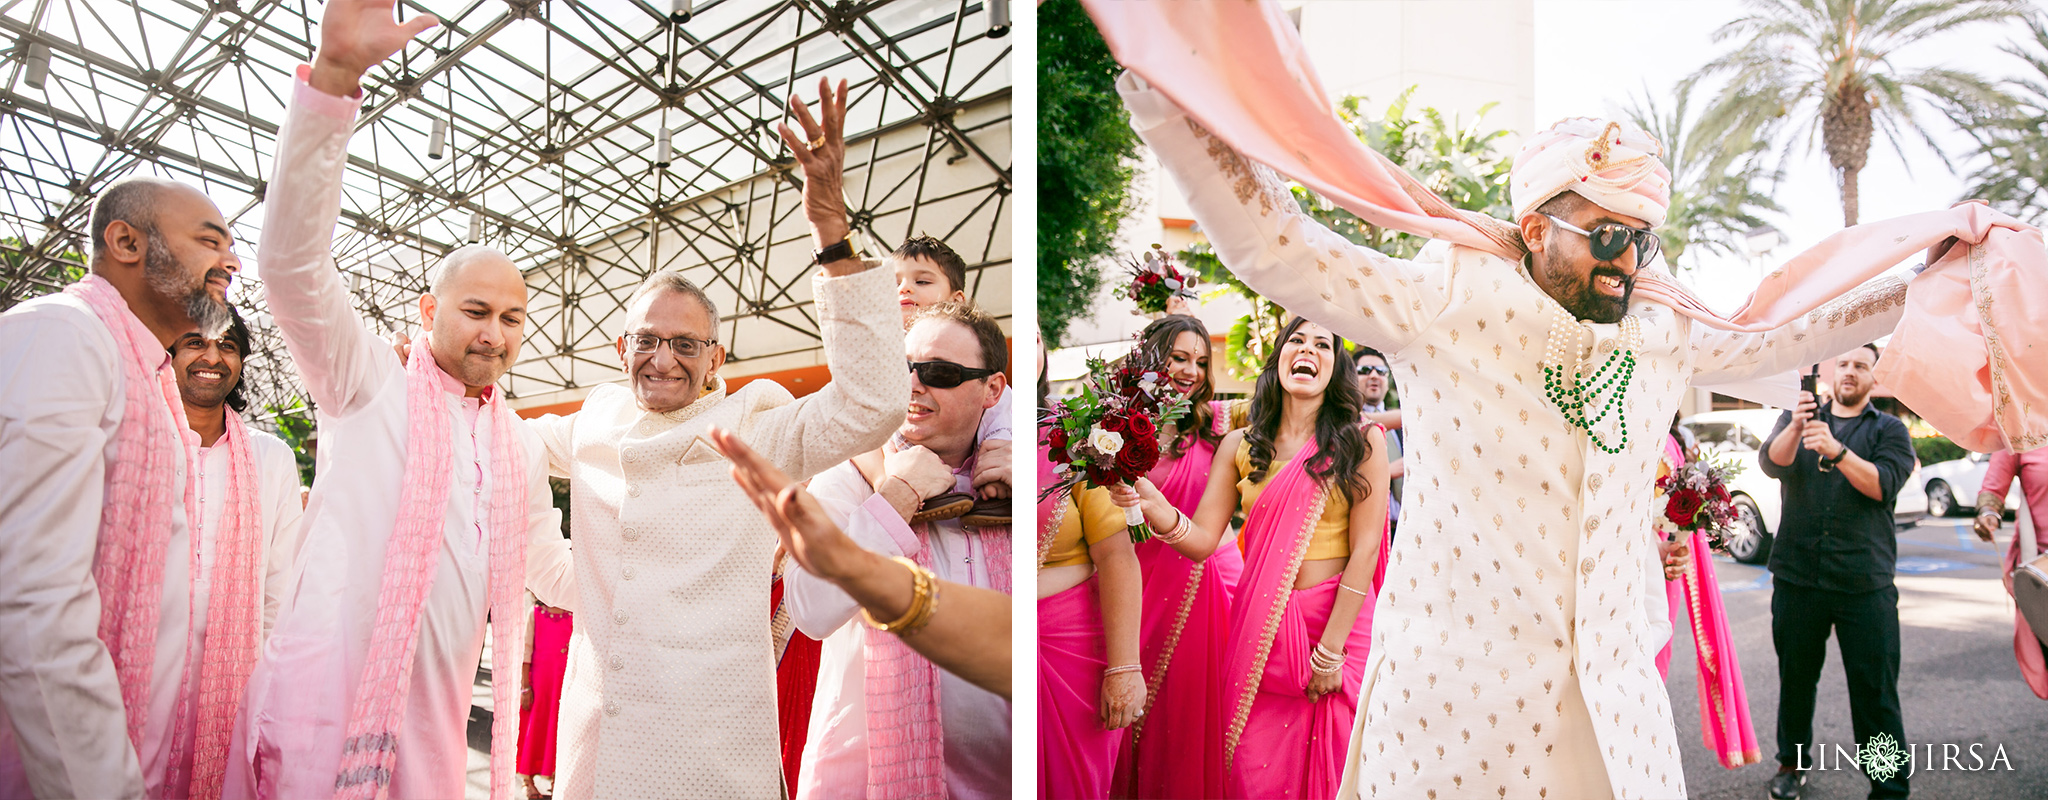 20 Hotel Irvine Indian Wedding Photography